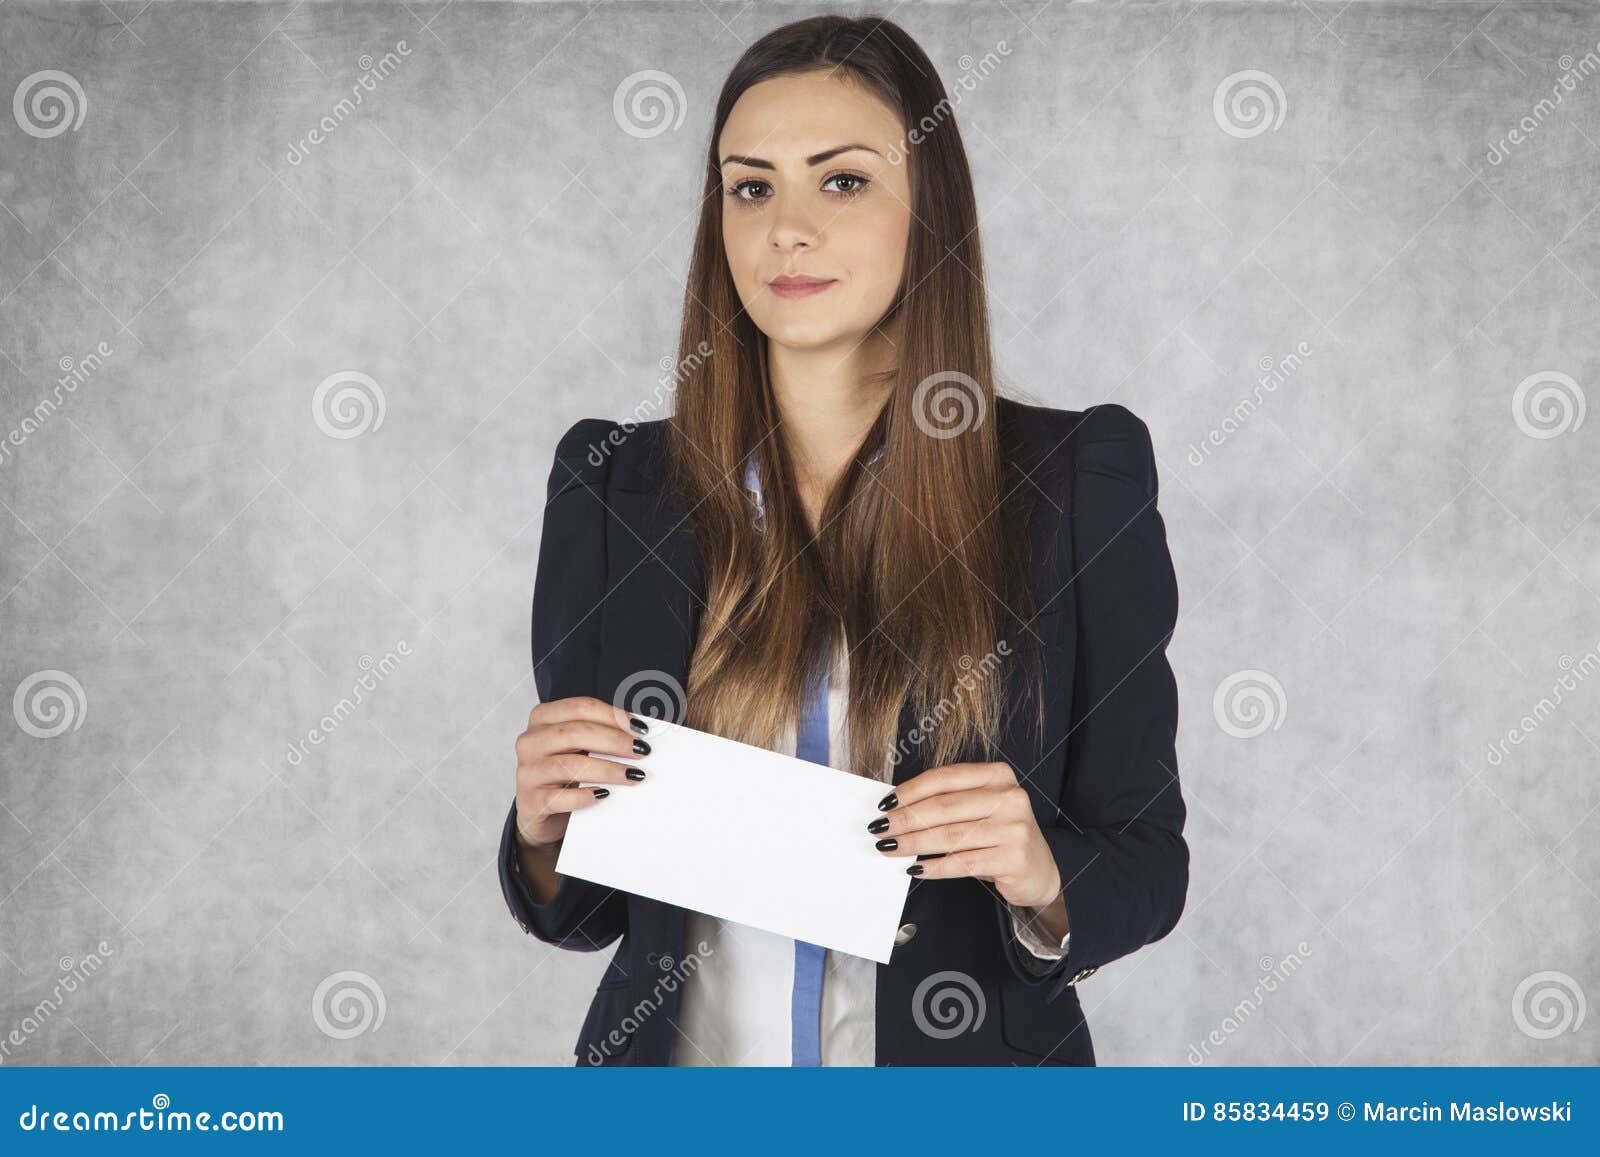 Студентка коммерсантка и просто красавица читать. Человек с конвертом. Женщина с конвертом в руках. Девушка c сонвертом. Конверт для женщины.